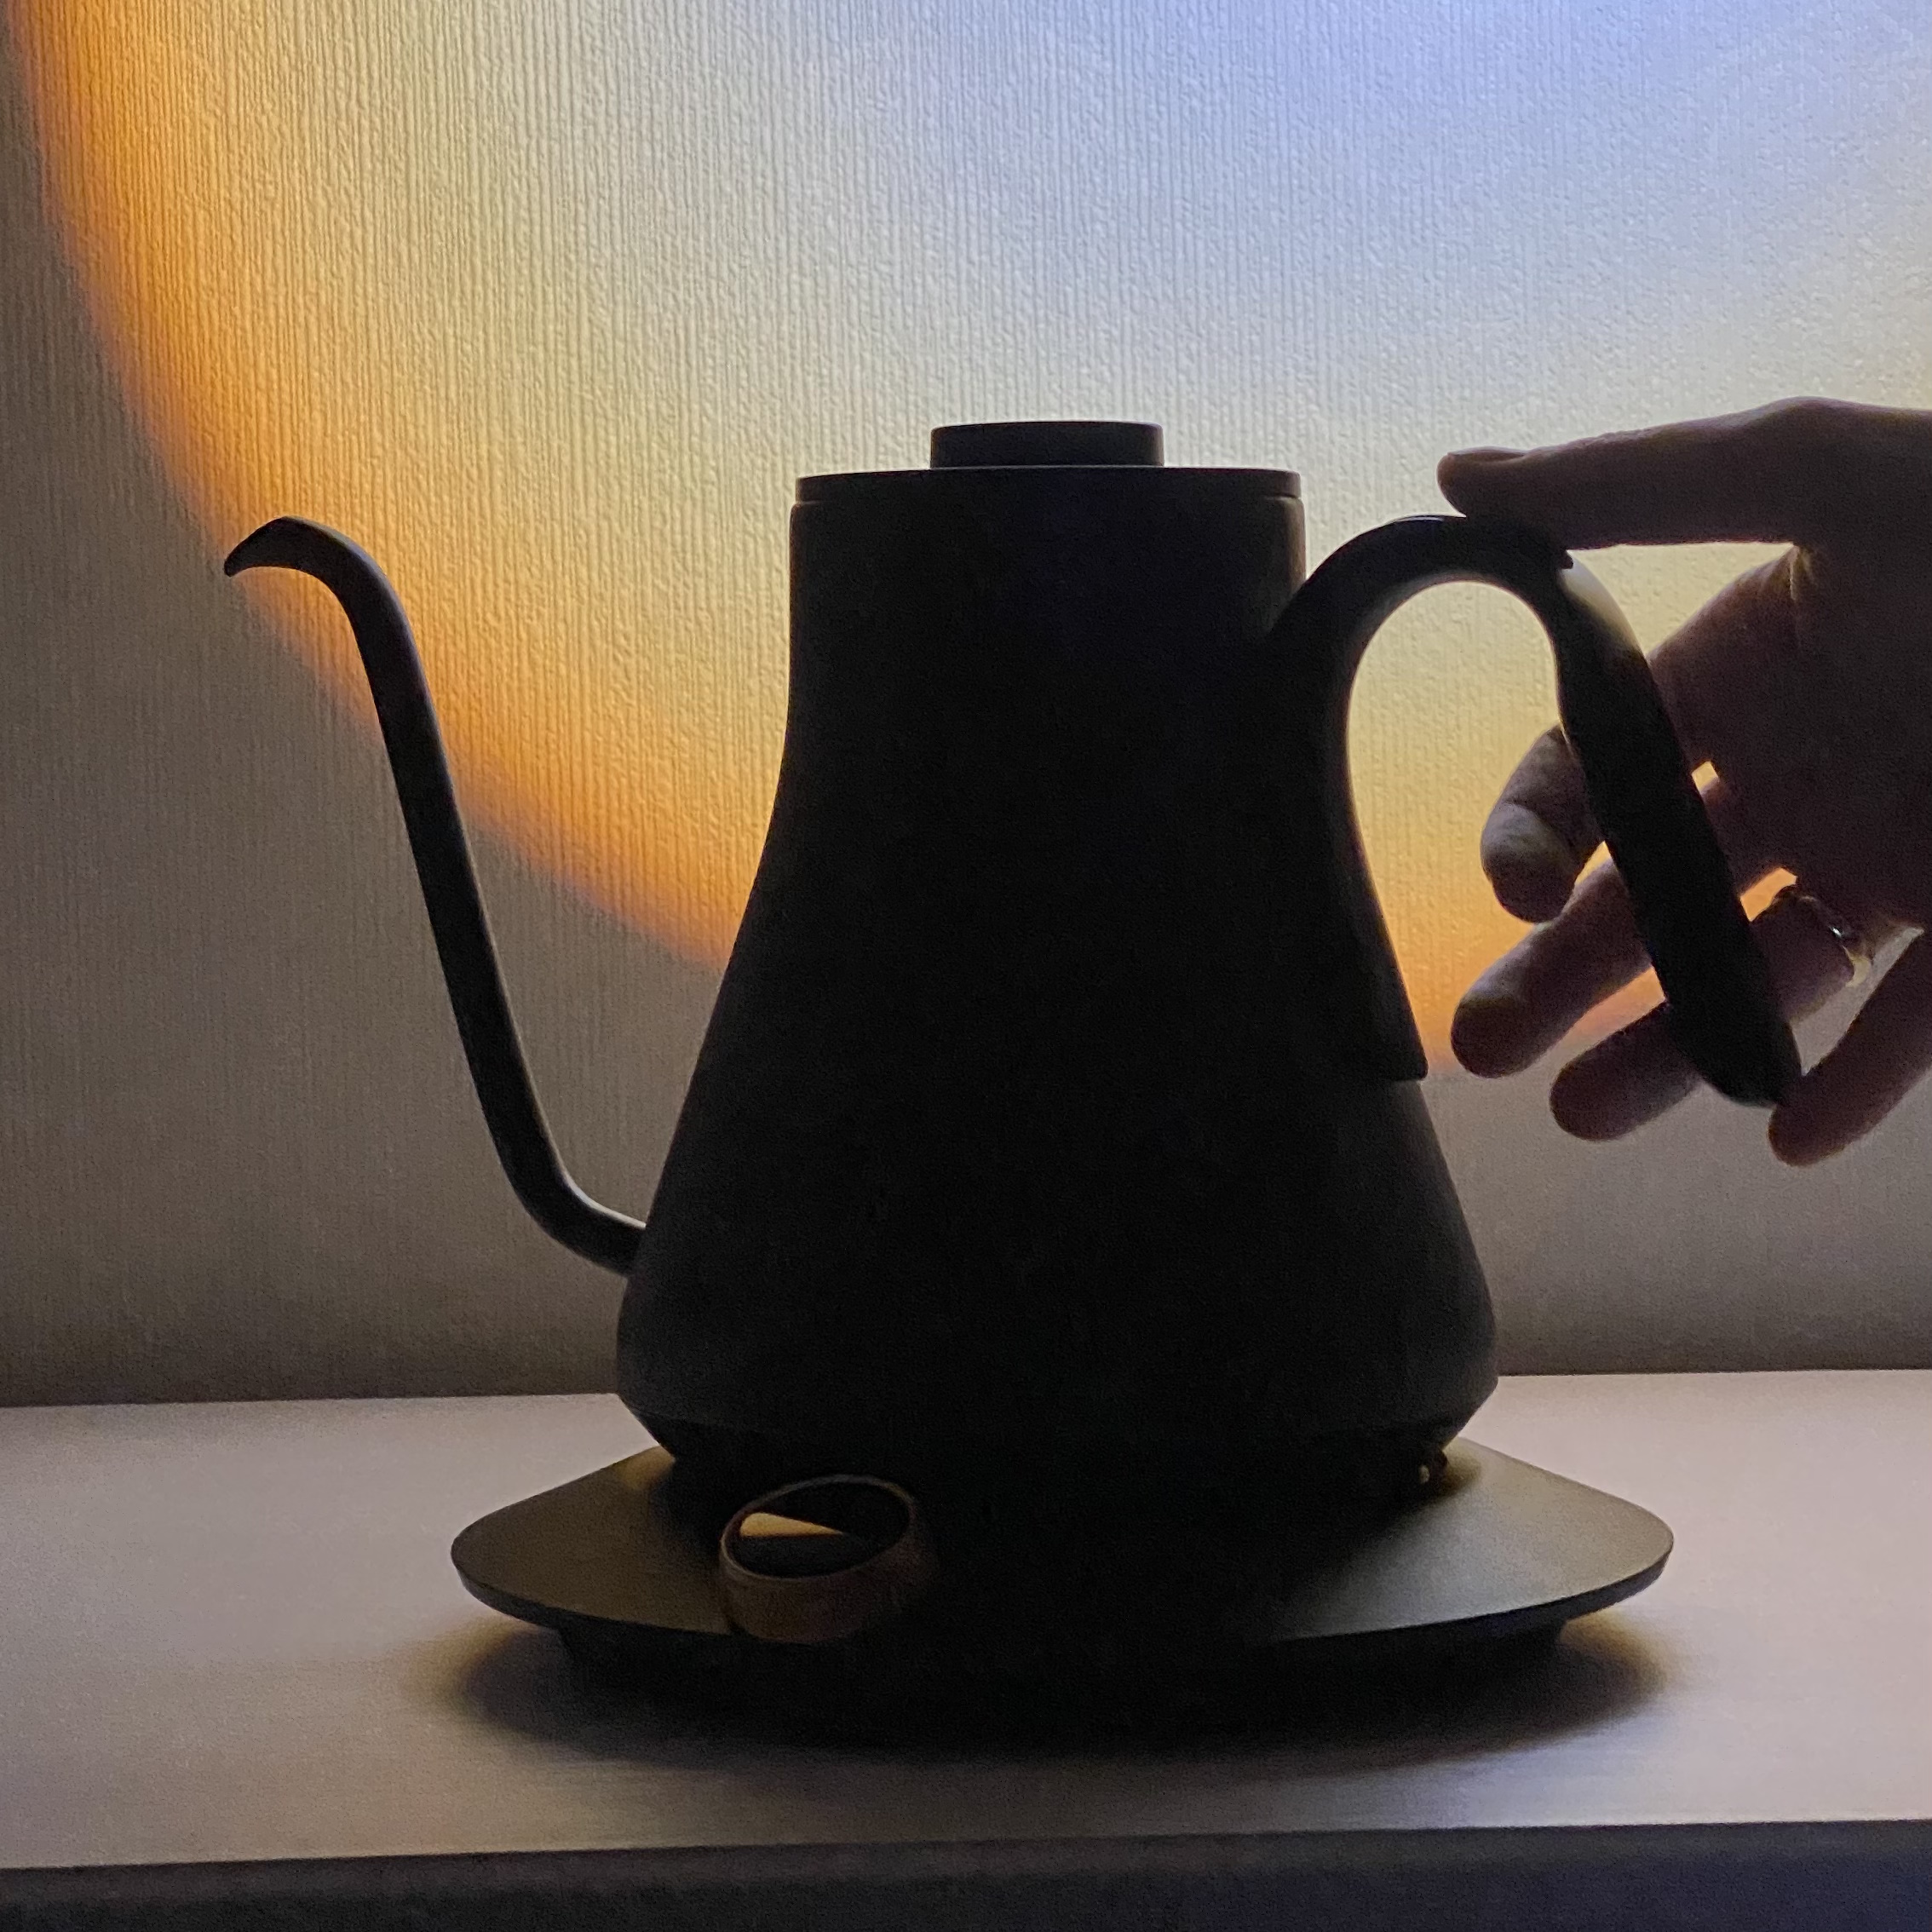 Чайник сделана из какого материала. Как построить чайник. Какие цветом бывают чайники. Чундук чайник. Из каких материалов делают чайники.